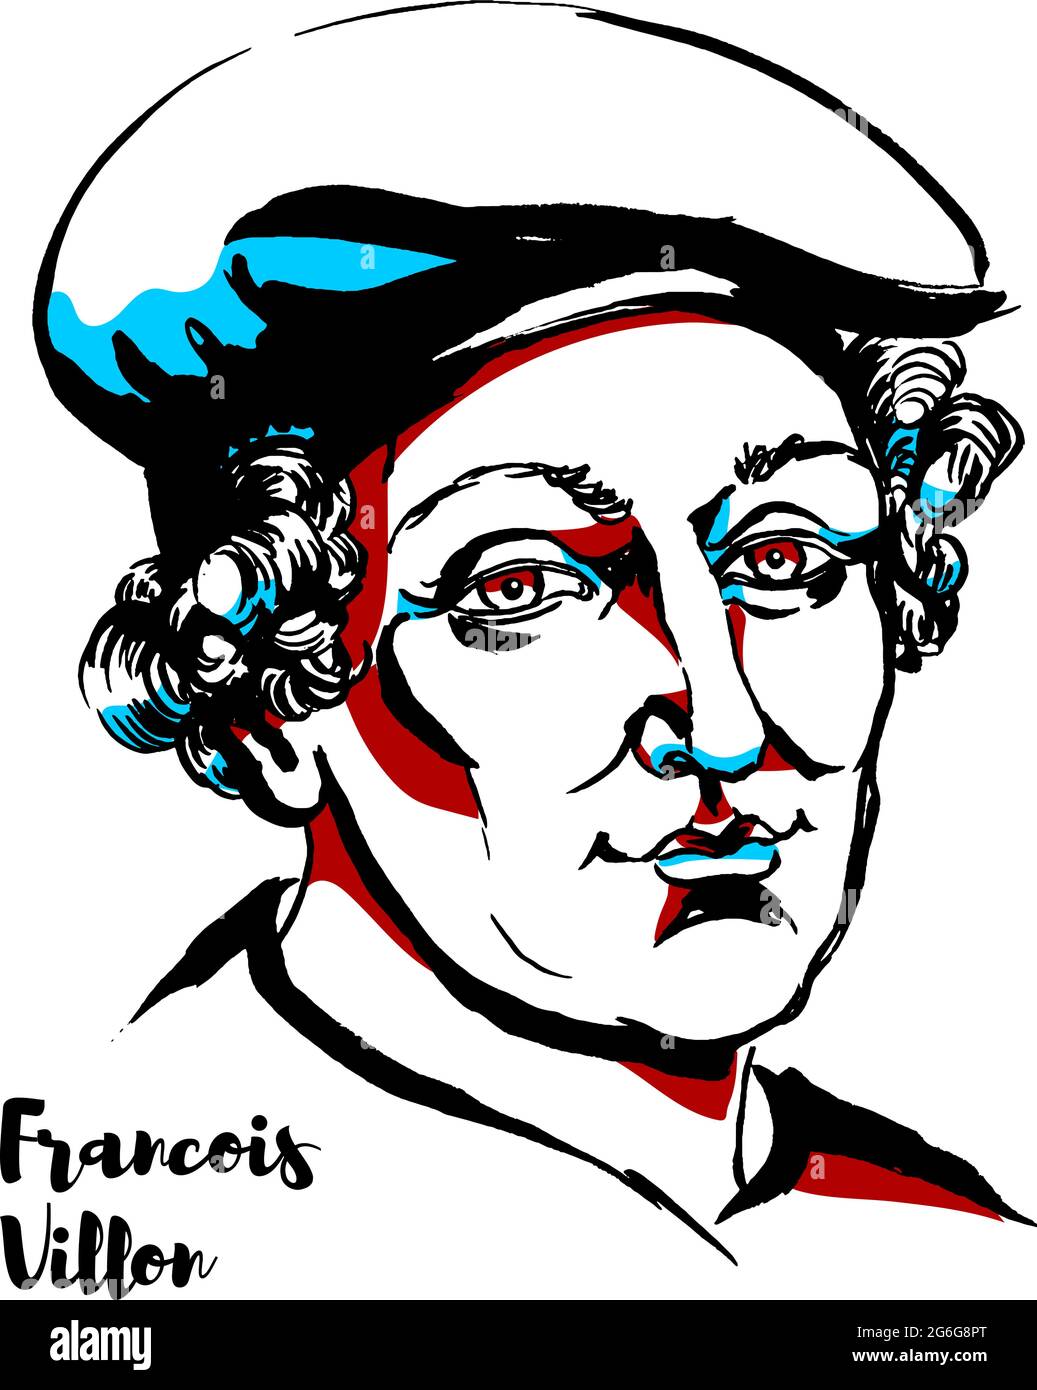 Francois Villon retrato vectorial grabado con contornos de tinta. Poeta francés de finales de la Edad Media. Ilustración del Vector